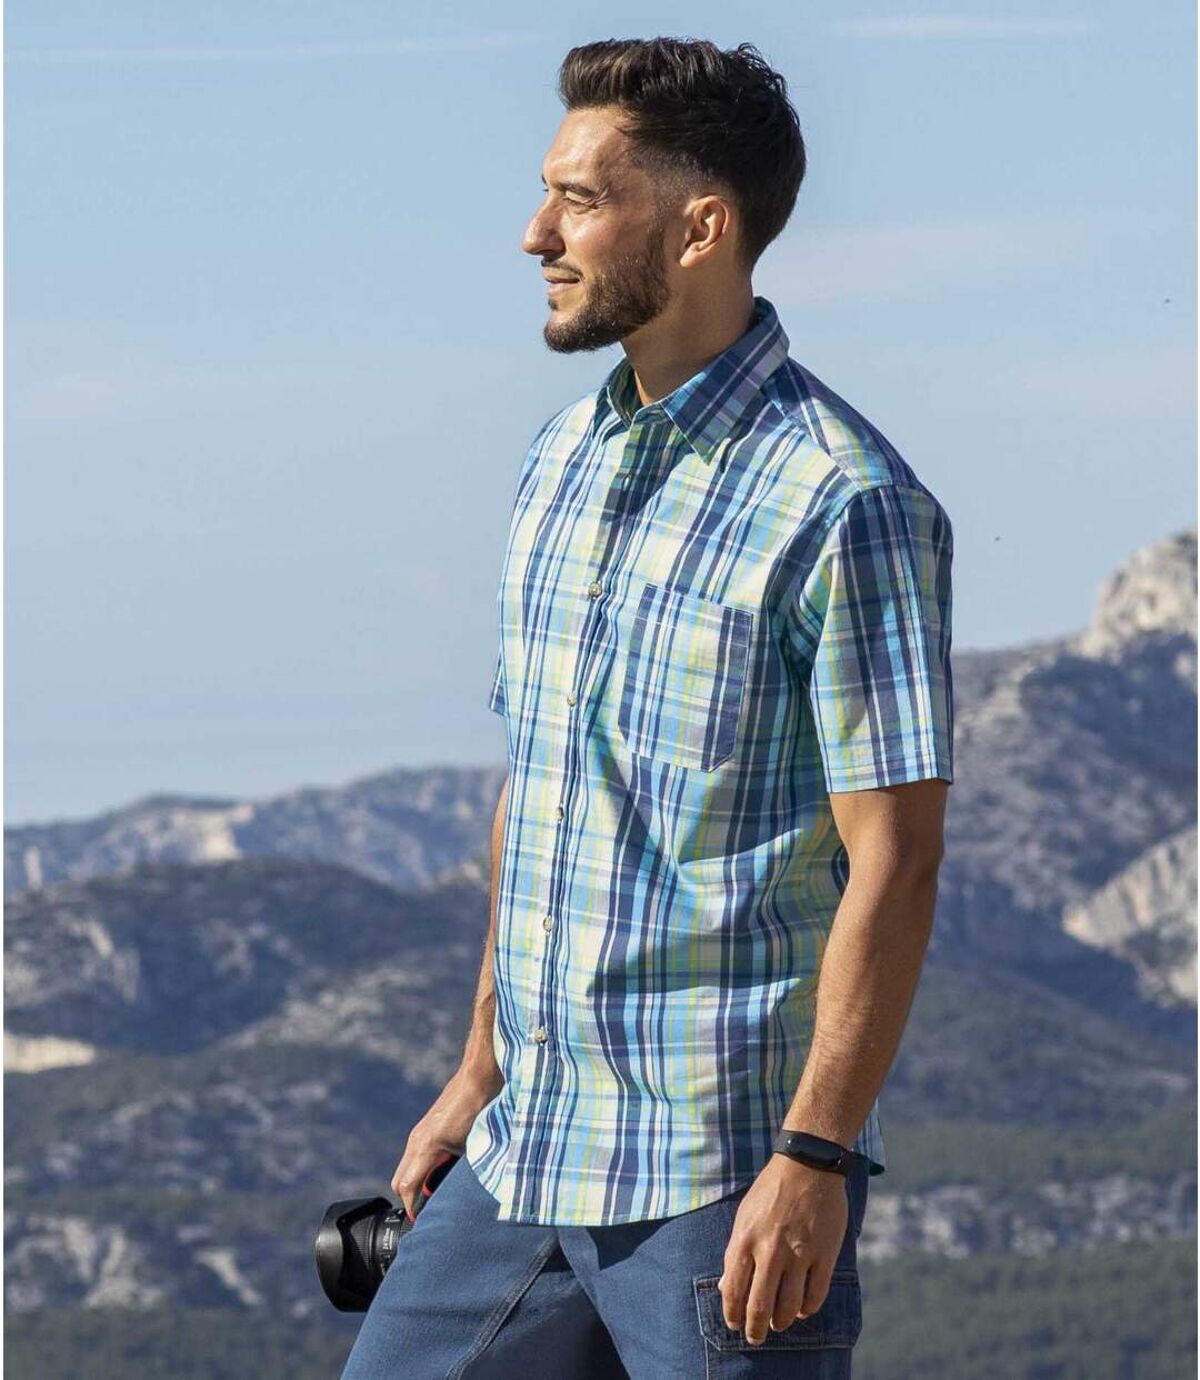 Men's Turquoise Checked Shirt Atlas For Men